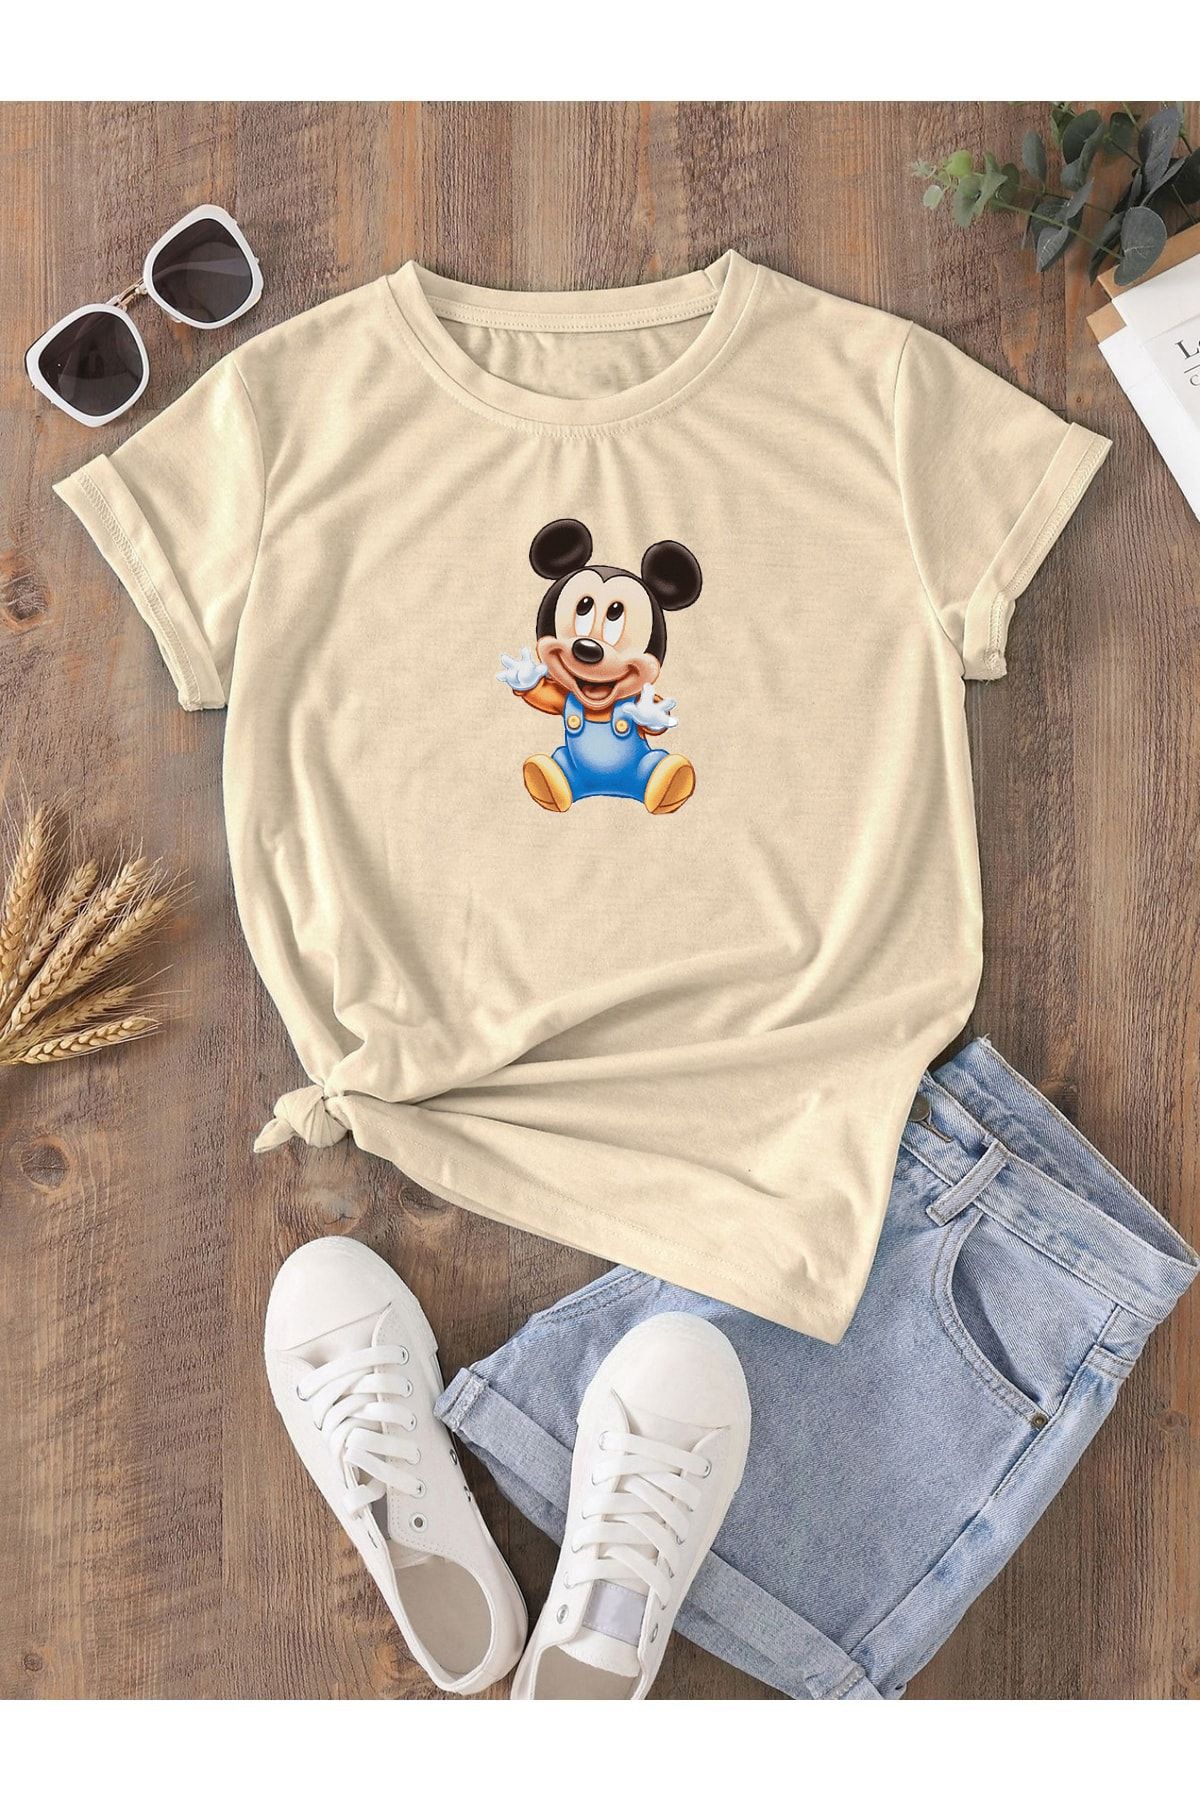 DUBU BUTİK Hamile Gebe T-shirt Bebek Mickey Mouse Baskılı - Vizon Bisiklet Yaka Oversize Tişört